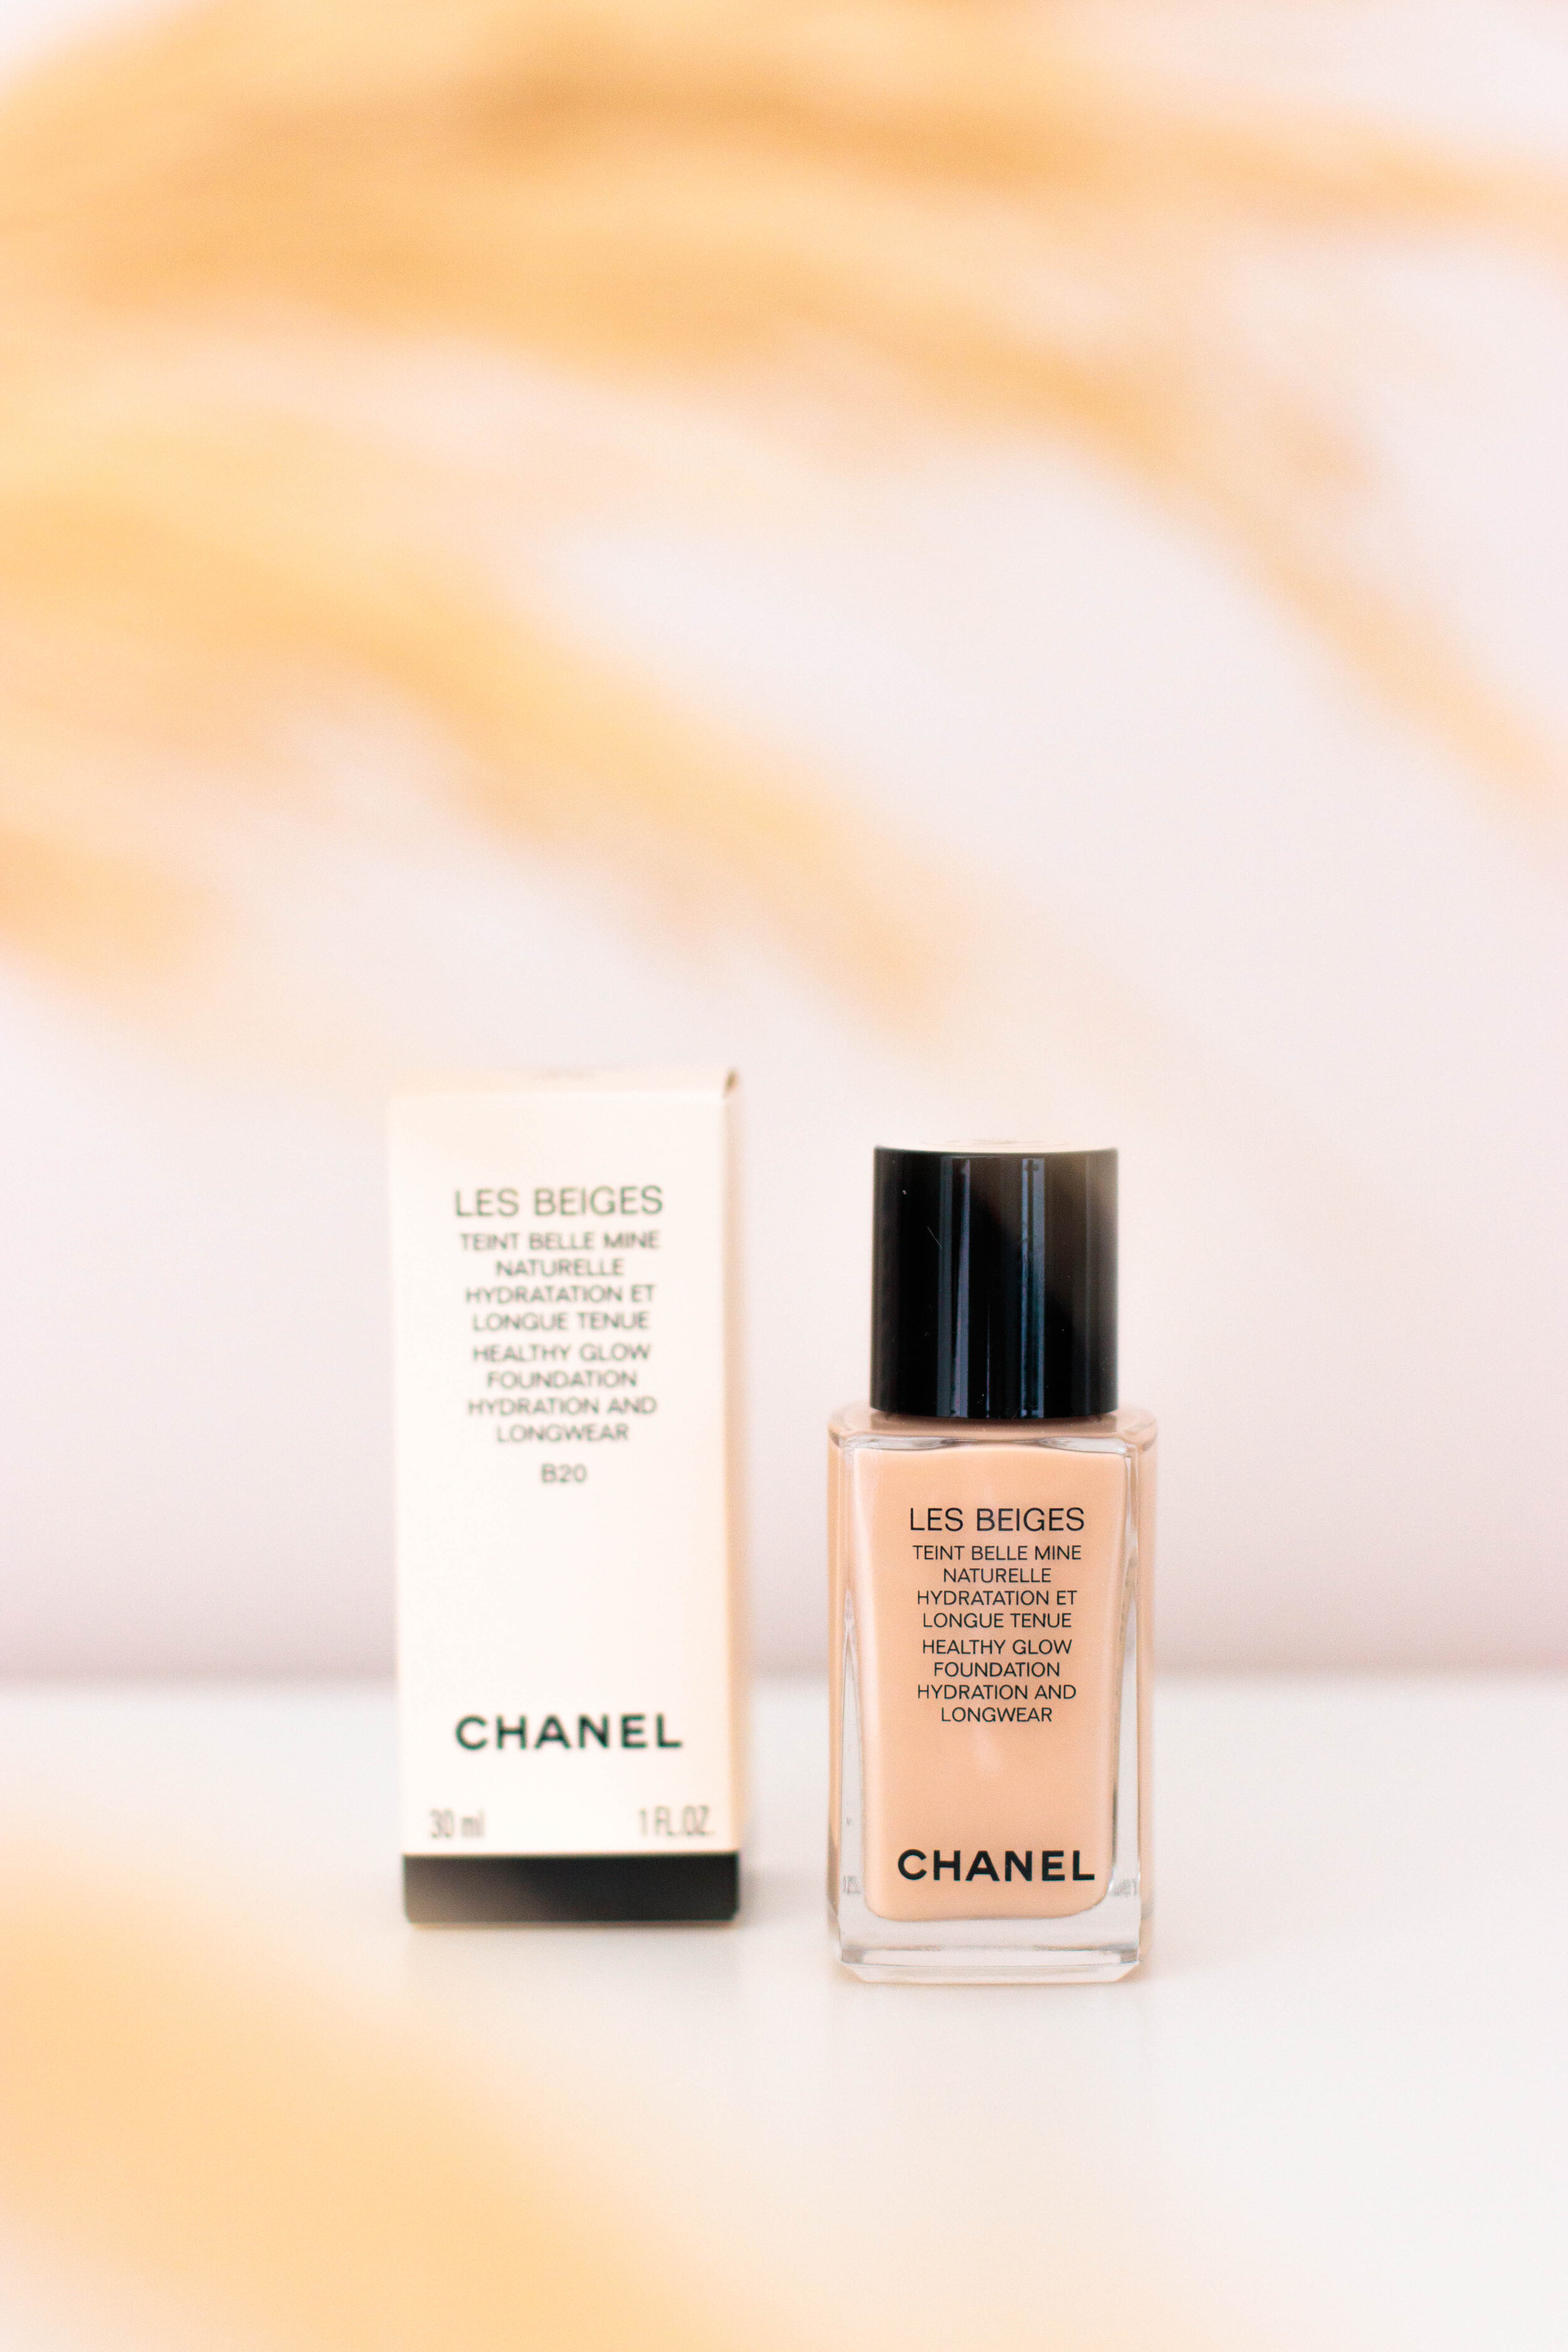 Chanel Fond de Teint Les Beiges Teint Belle Mine Naturelle, mon avis ! —  Pauuulette - Blog Makeup